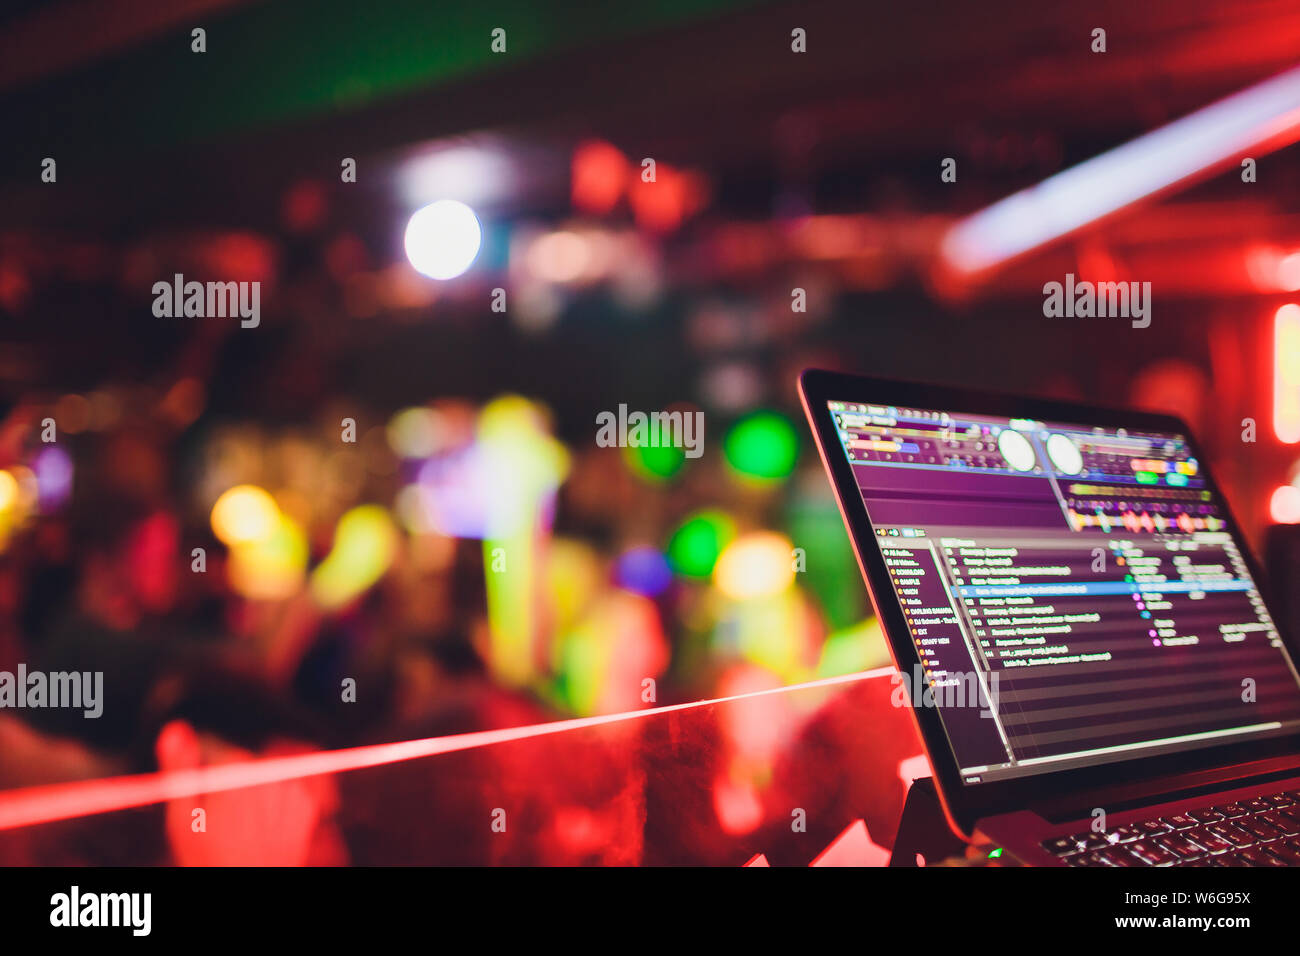 Veranstaltung Tuner Controlling Sound Von Tablet Auf Dem Hintergrund Der Karaoke Bar Stockfotografie Alamy